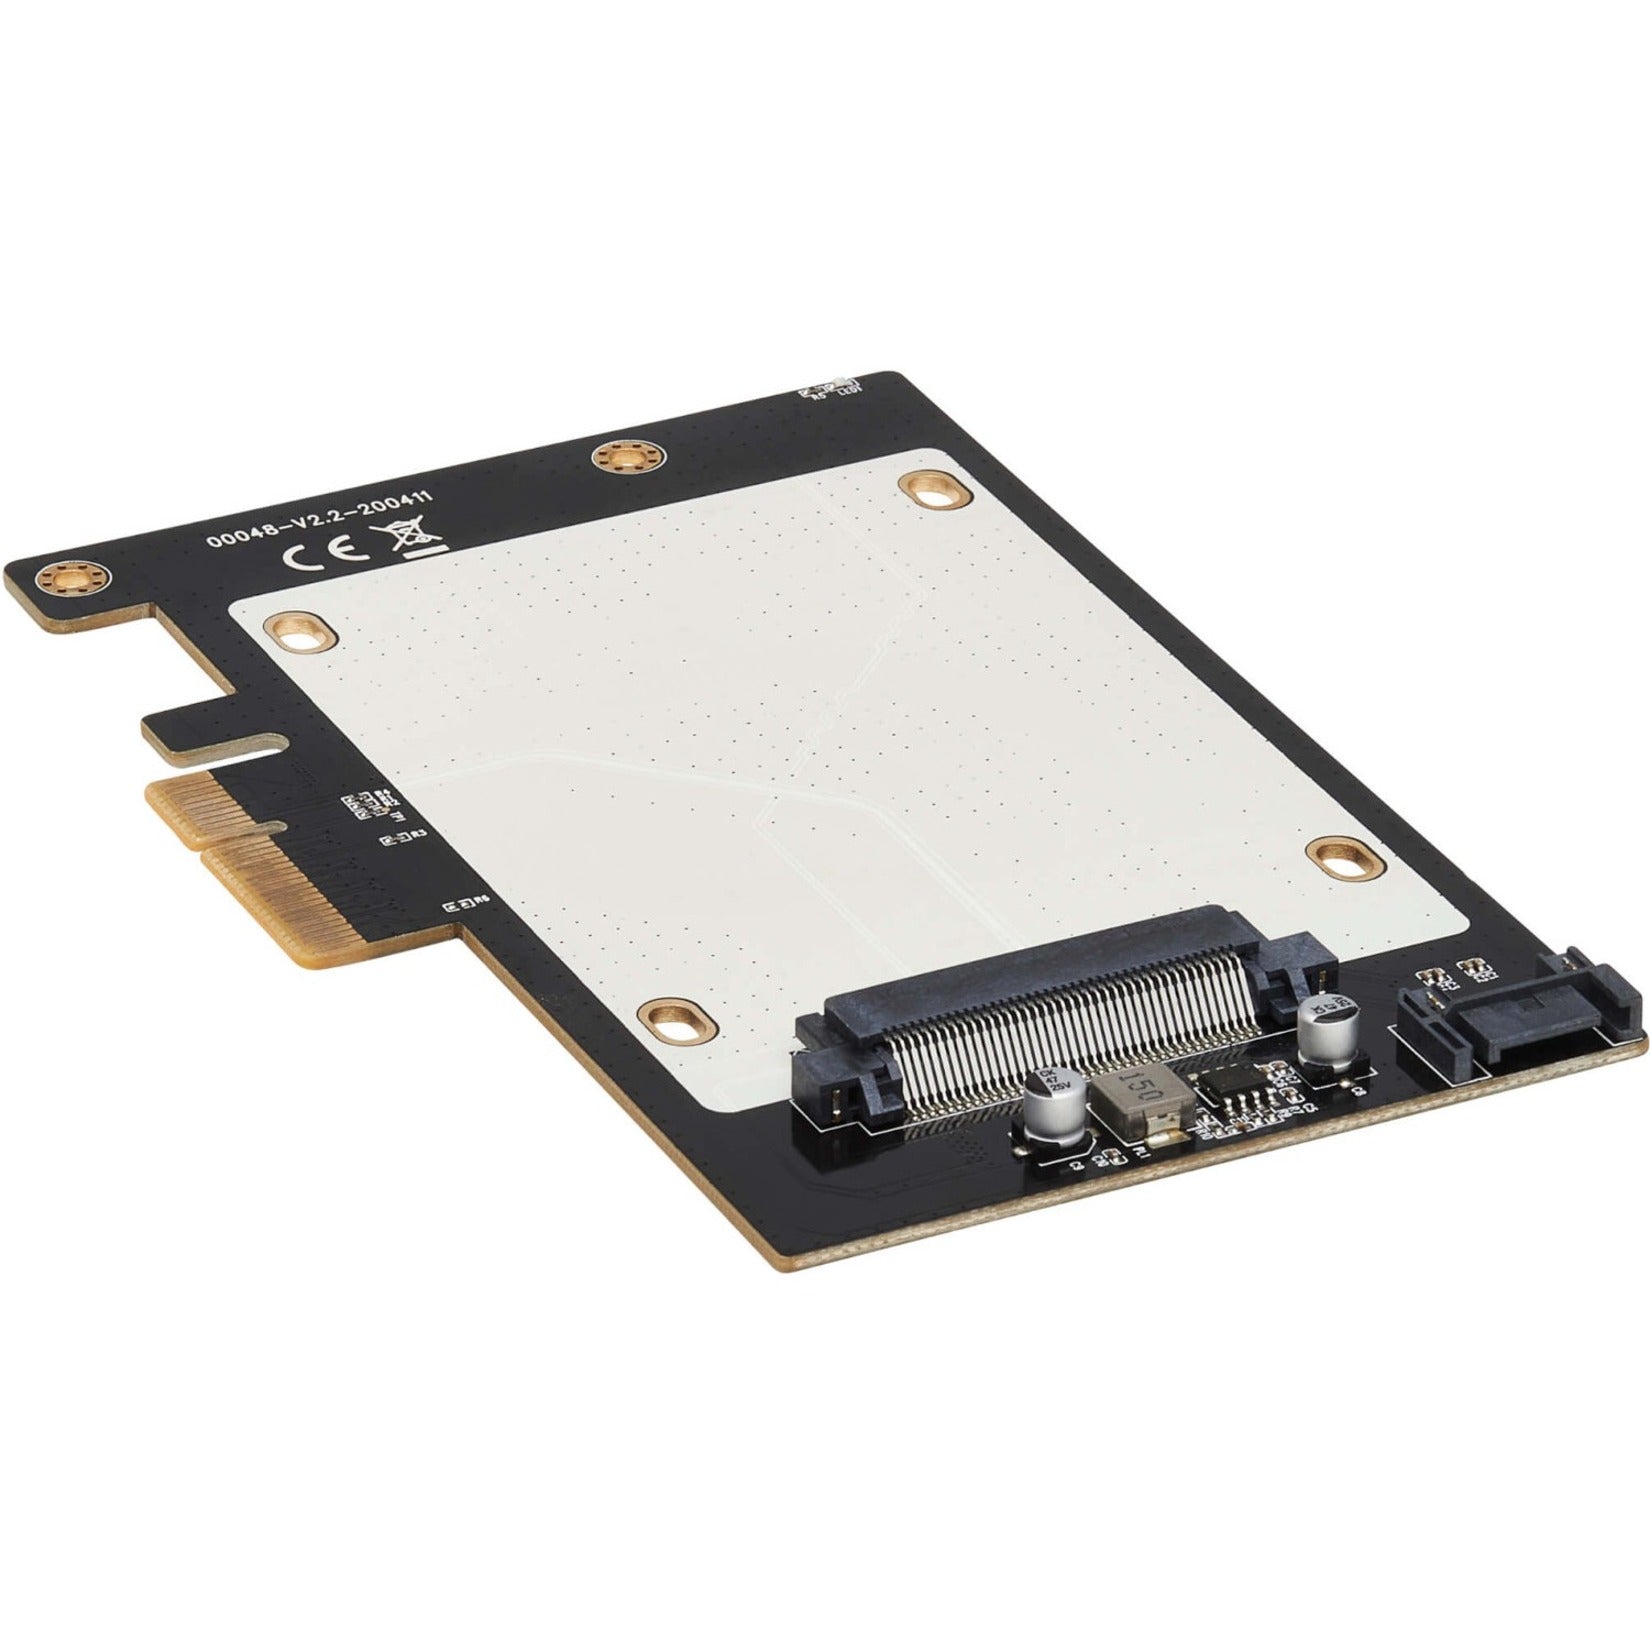 Tripp Lite PCE-U2-PX4 U.2 to PCIe Adapter for 2.5" NVMe U.2 SSD, SFF-8639, PCI Express (x4) Card